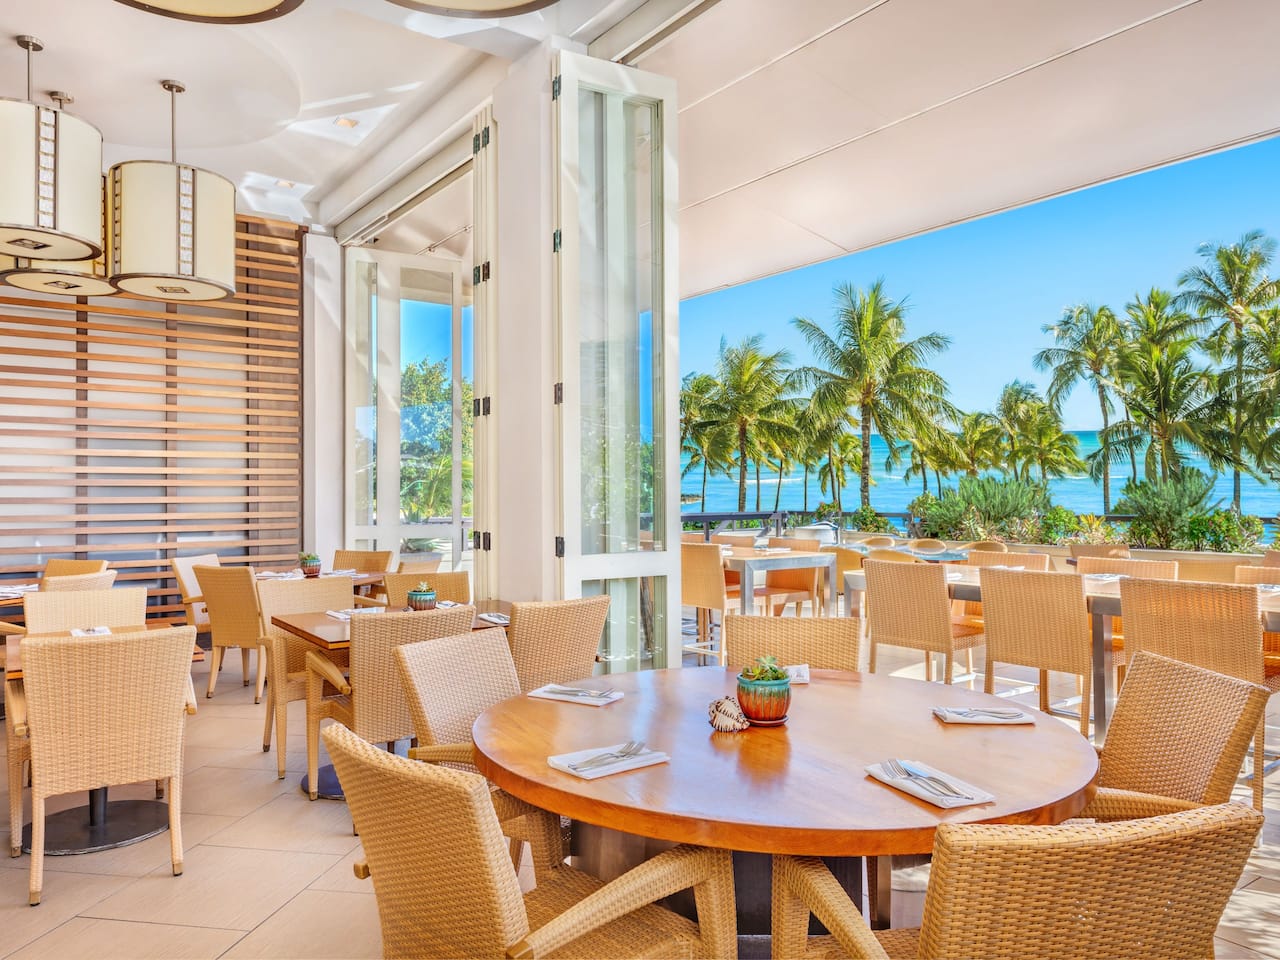 Restaurant in Waikiki Beach with oceanfront view